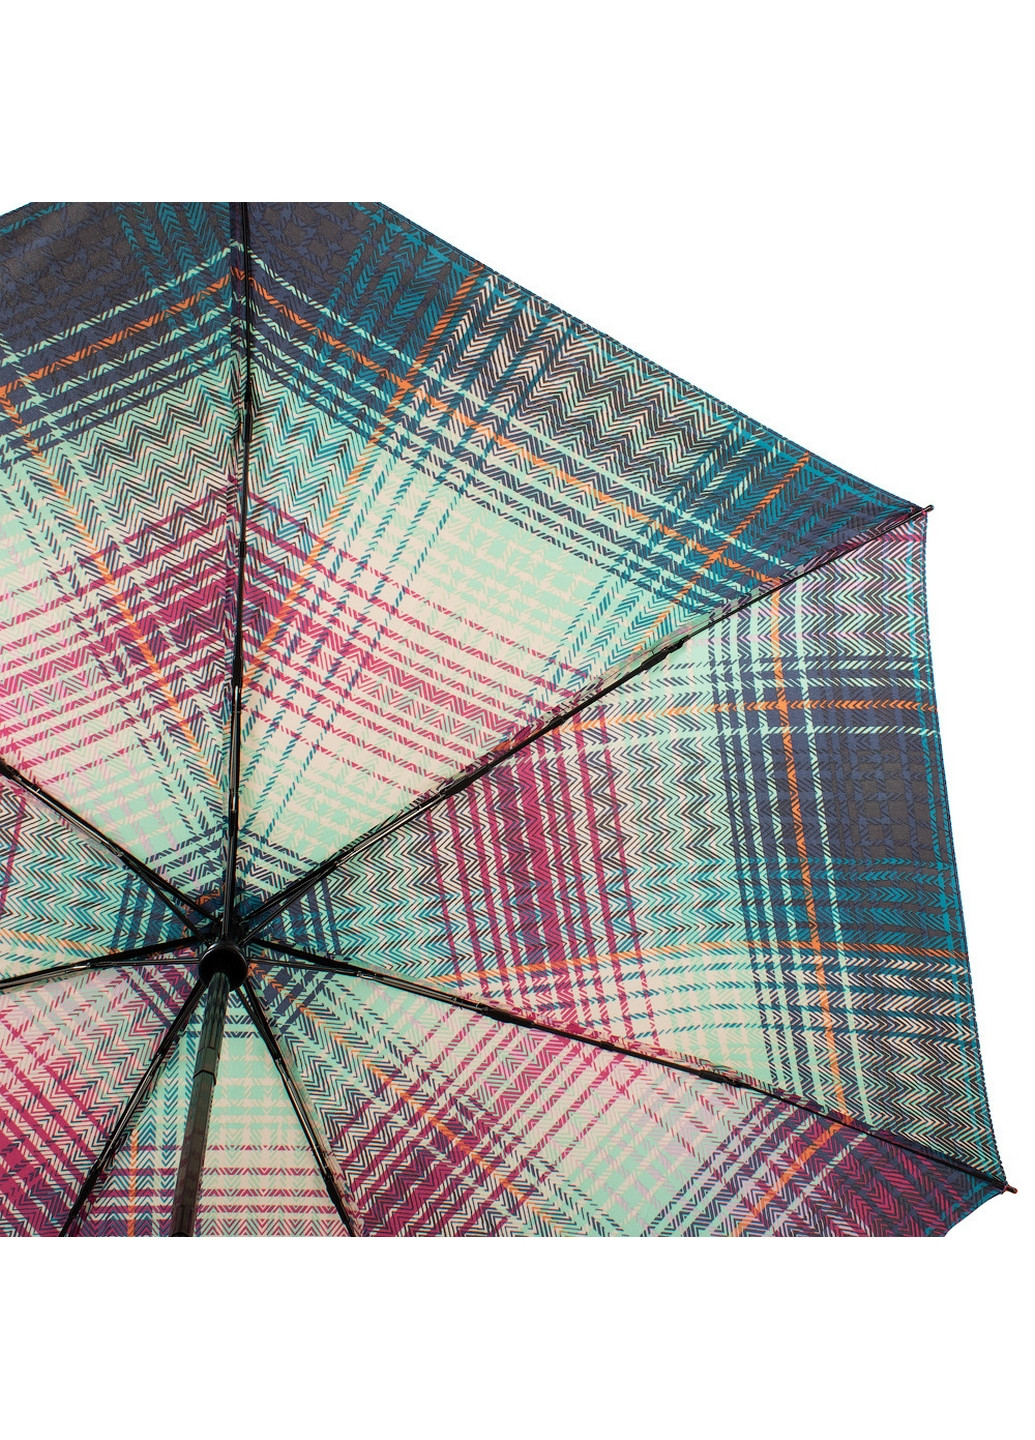 Жіноча складна парасолька автомат 95 см Esprit (260329683)